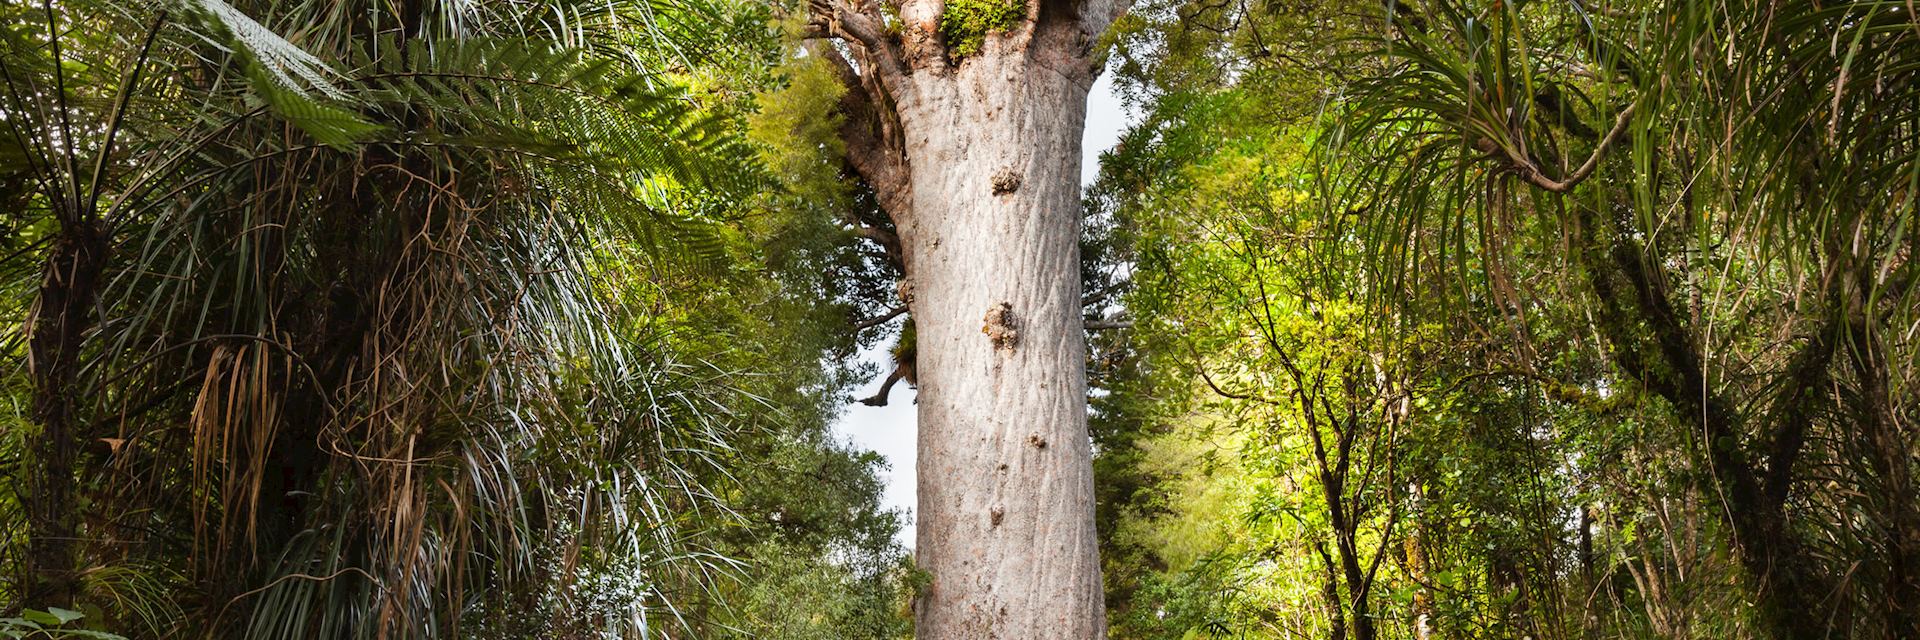 Kauri tree, Waipoua Forest